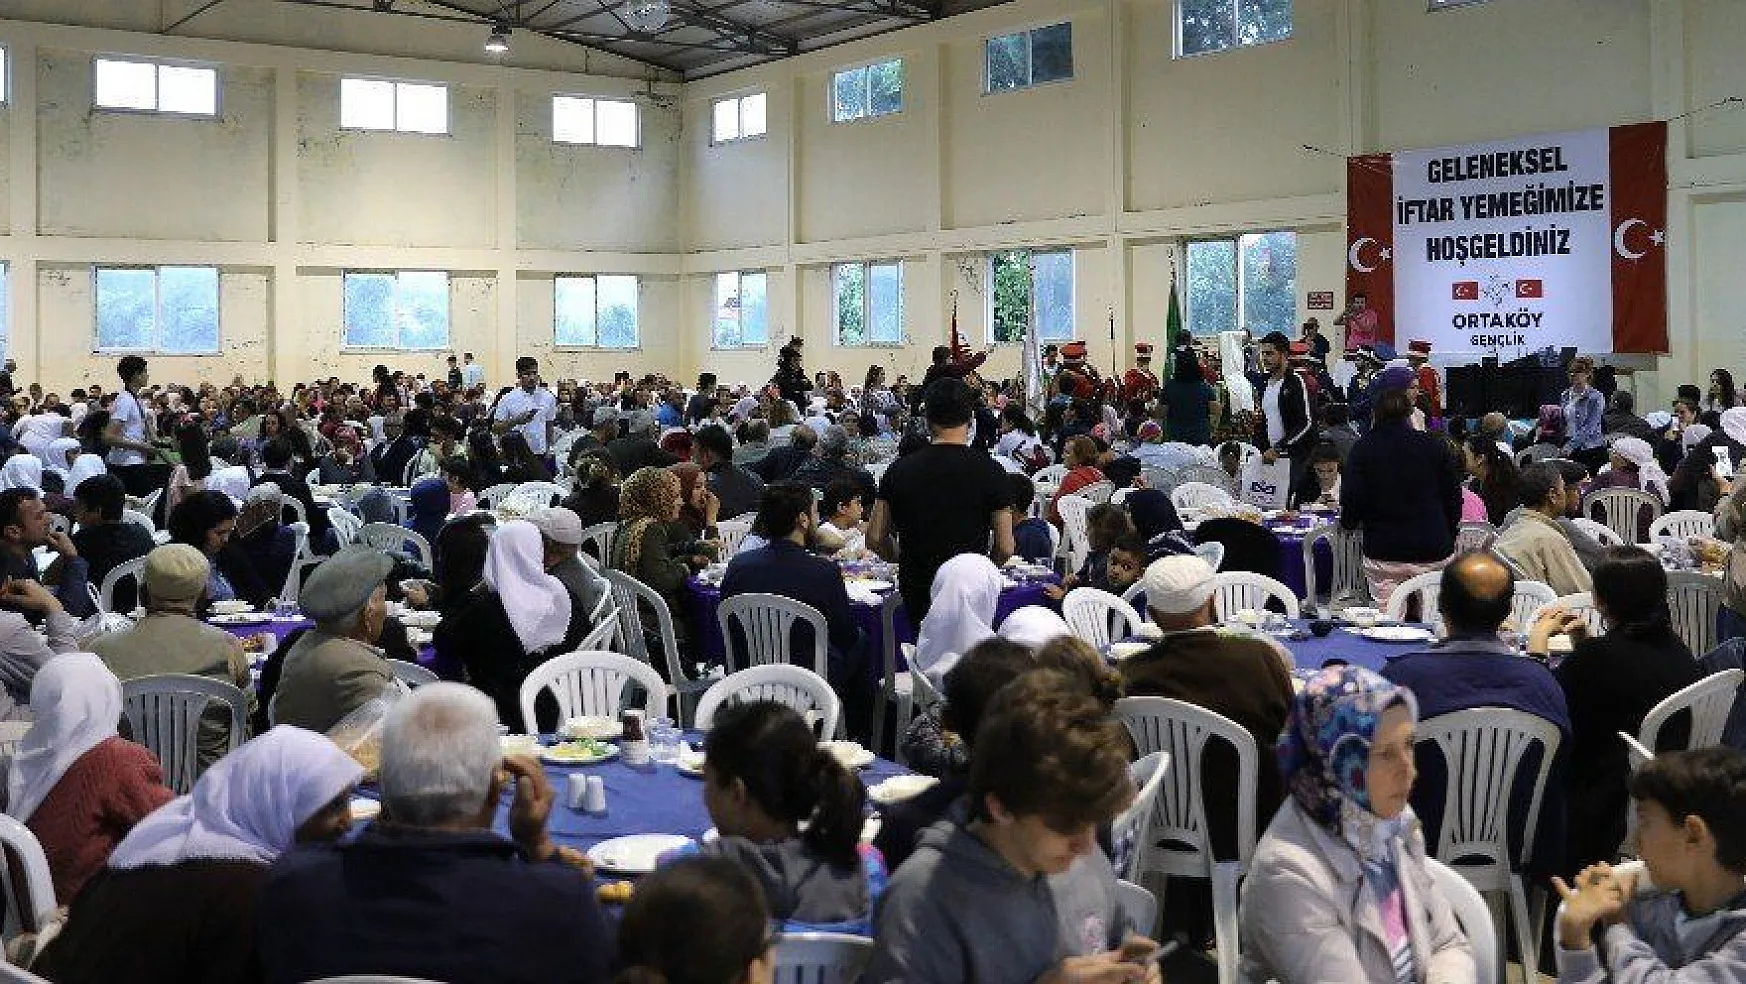 Ortaköy'lü gençlerden 2 bin kişilik iftar yemeği